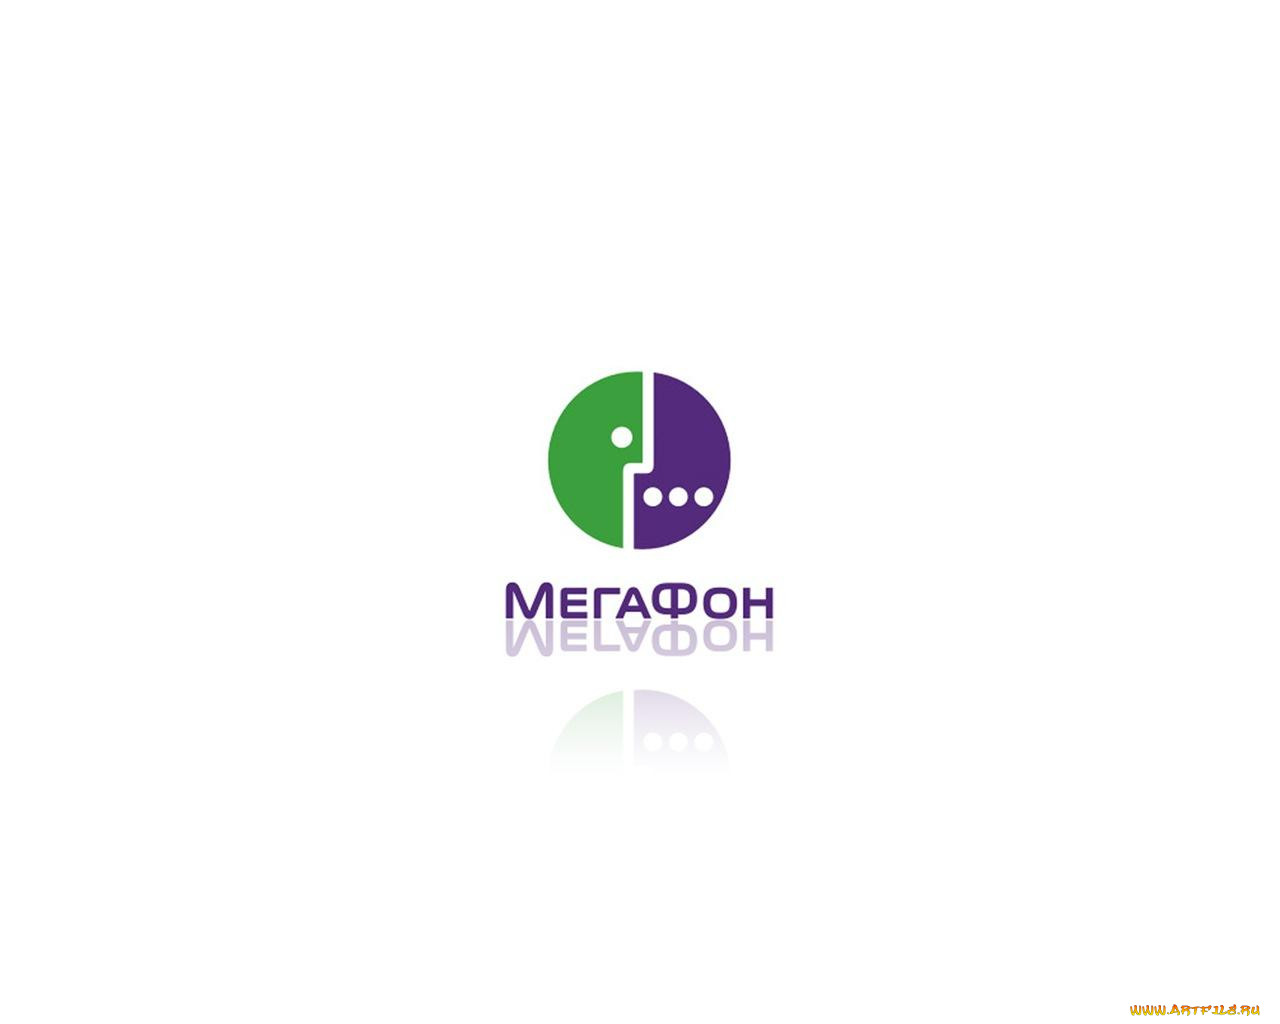 Megafon. МЕГАФОН. МЕГАФОН эмблема. МЕГАФОН новый логотип. МЕГАФОН логотип 2002.